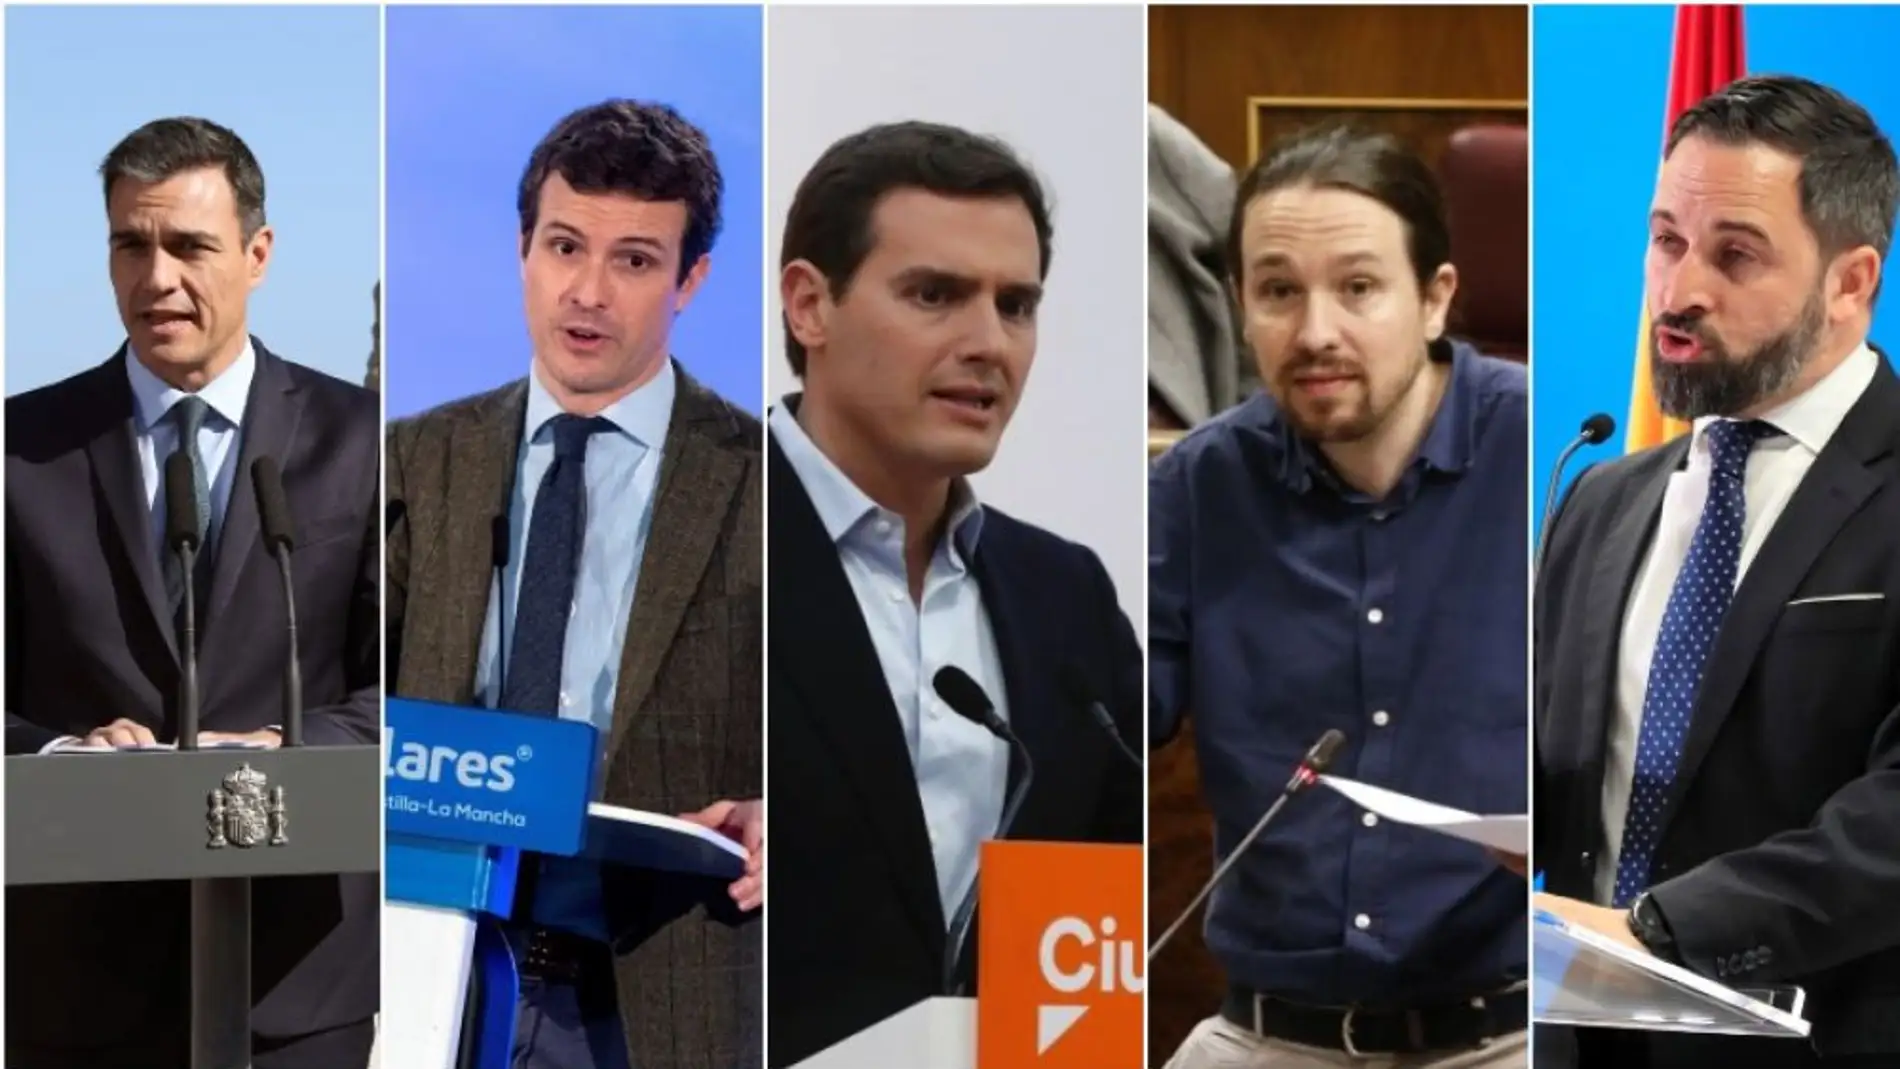 Noticias 2 Antena 3 (25-02-19) Los cinco partidos políticos invitados al debate de Atresmedia muestran su disposición a participar